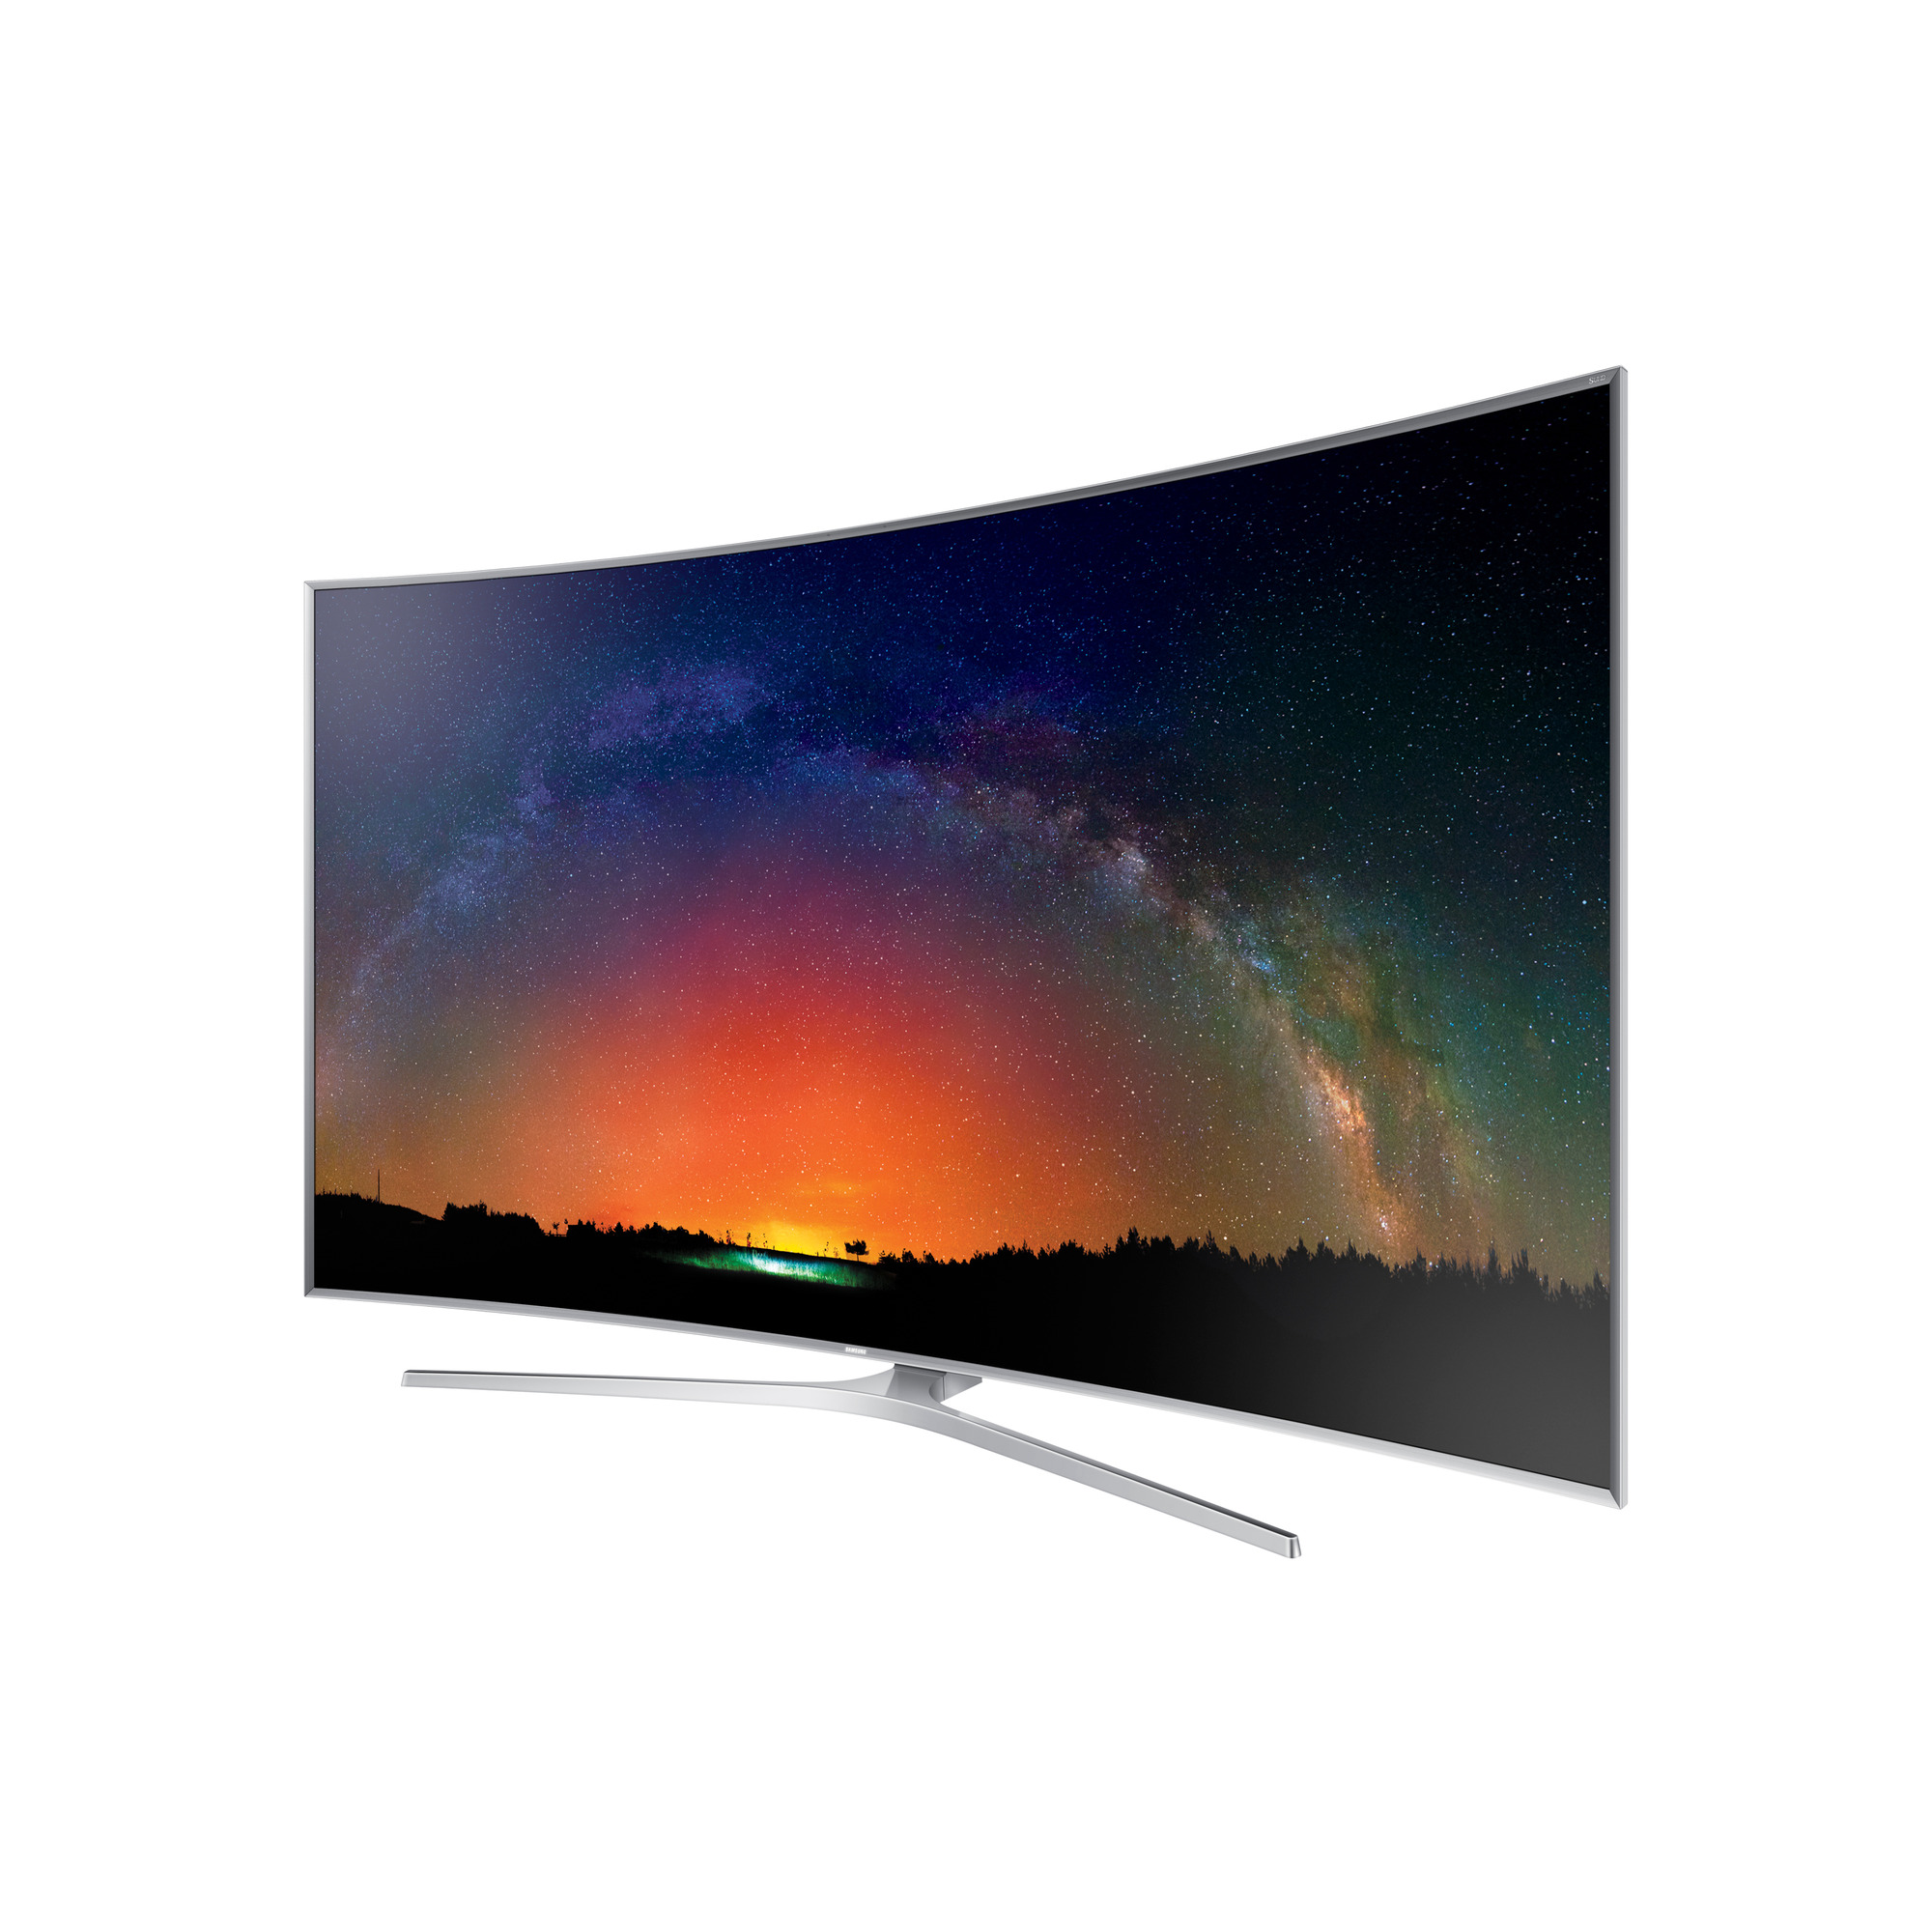 Телевизор 50 60 см. Samsung ue50js7200. Телевизор самсунг QLED Curved 55. Ue48js9000t. Телевизор Samsung UE 65au9000.